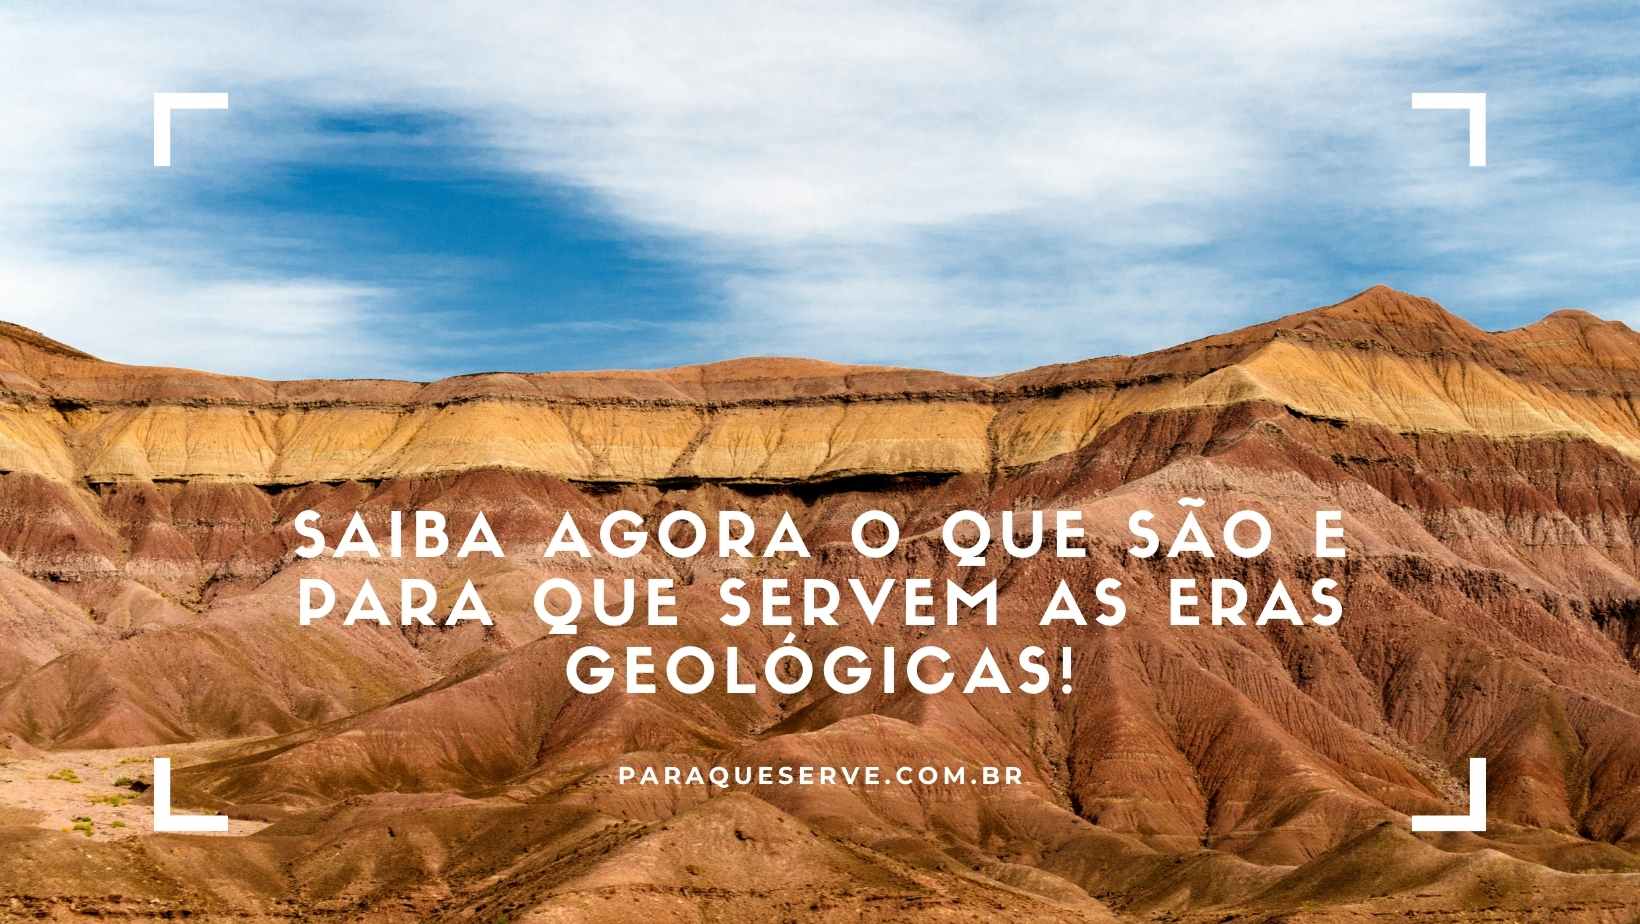 Saiba agora o que são e para que servem as eras geológicas!